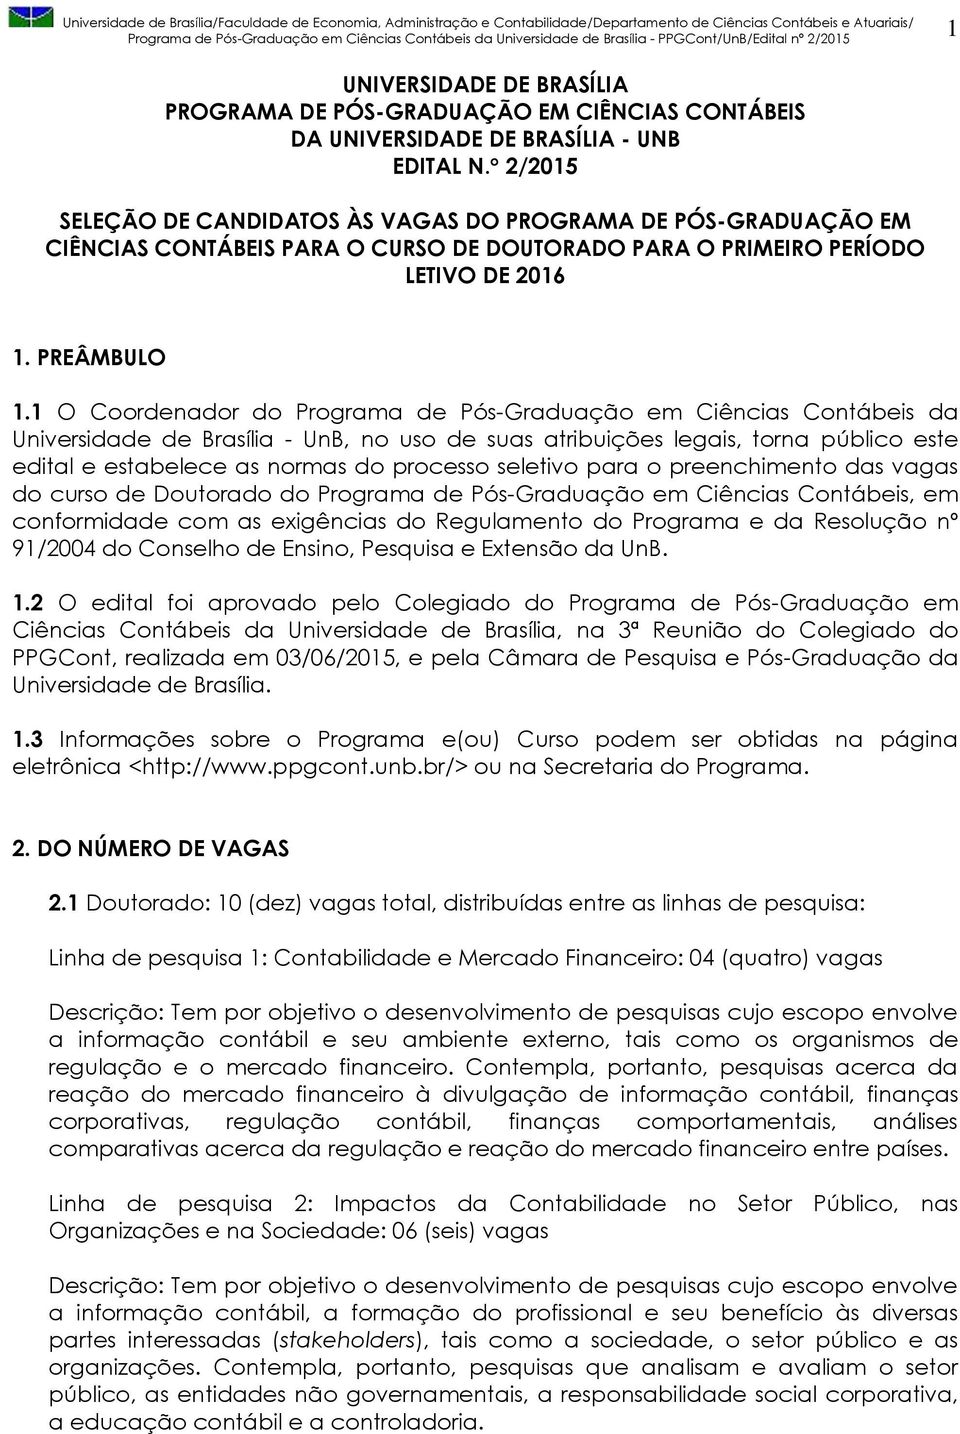 1 O Coordenador do Programa de Pós-Graduação em Ciências Contábeis da Universidade de Brasília - UnB, no uso de suas atribuições legais, torna público este edital e estabelece as normas do processo